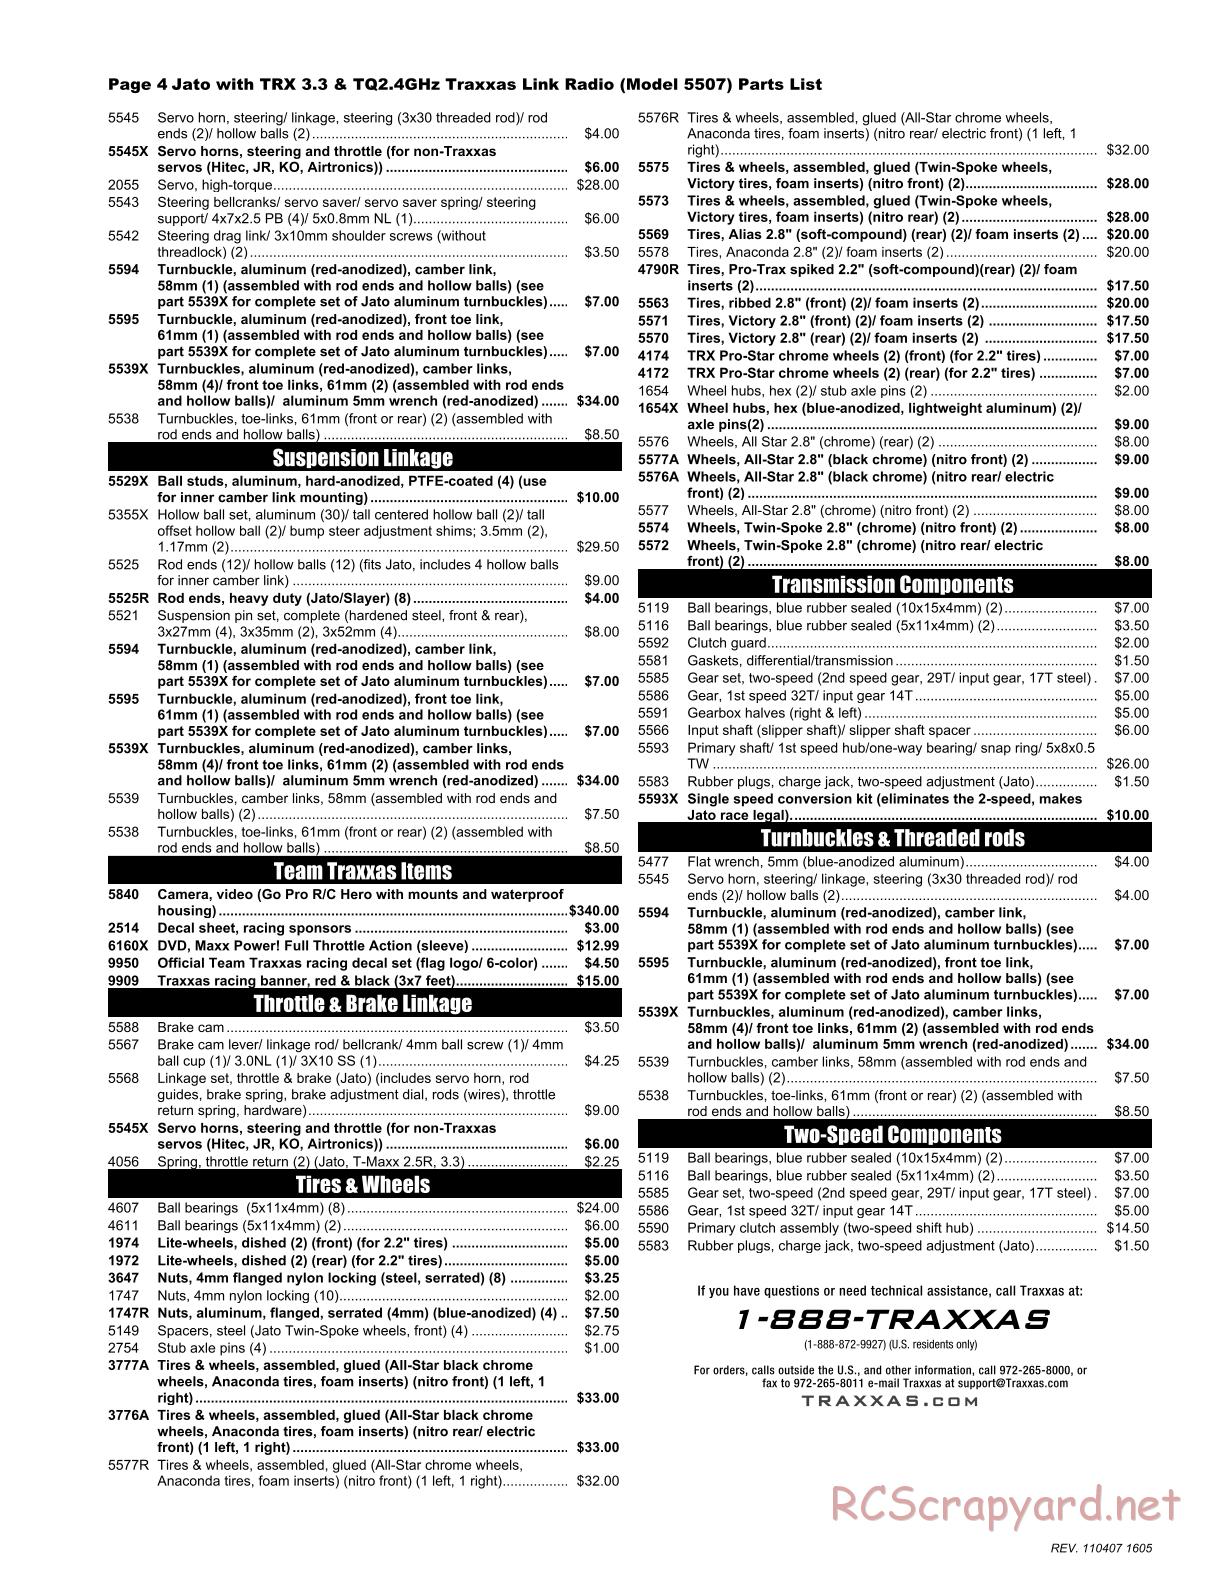 Traxxas - Jato 3.3 (2010) - Parts List - Page 4